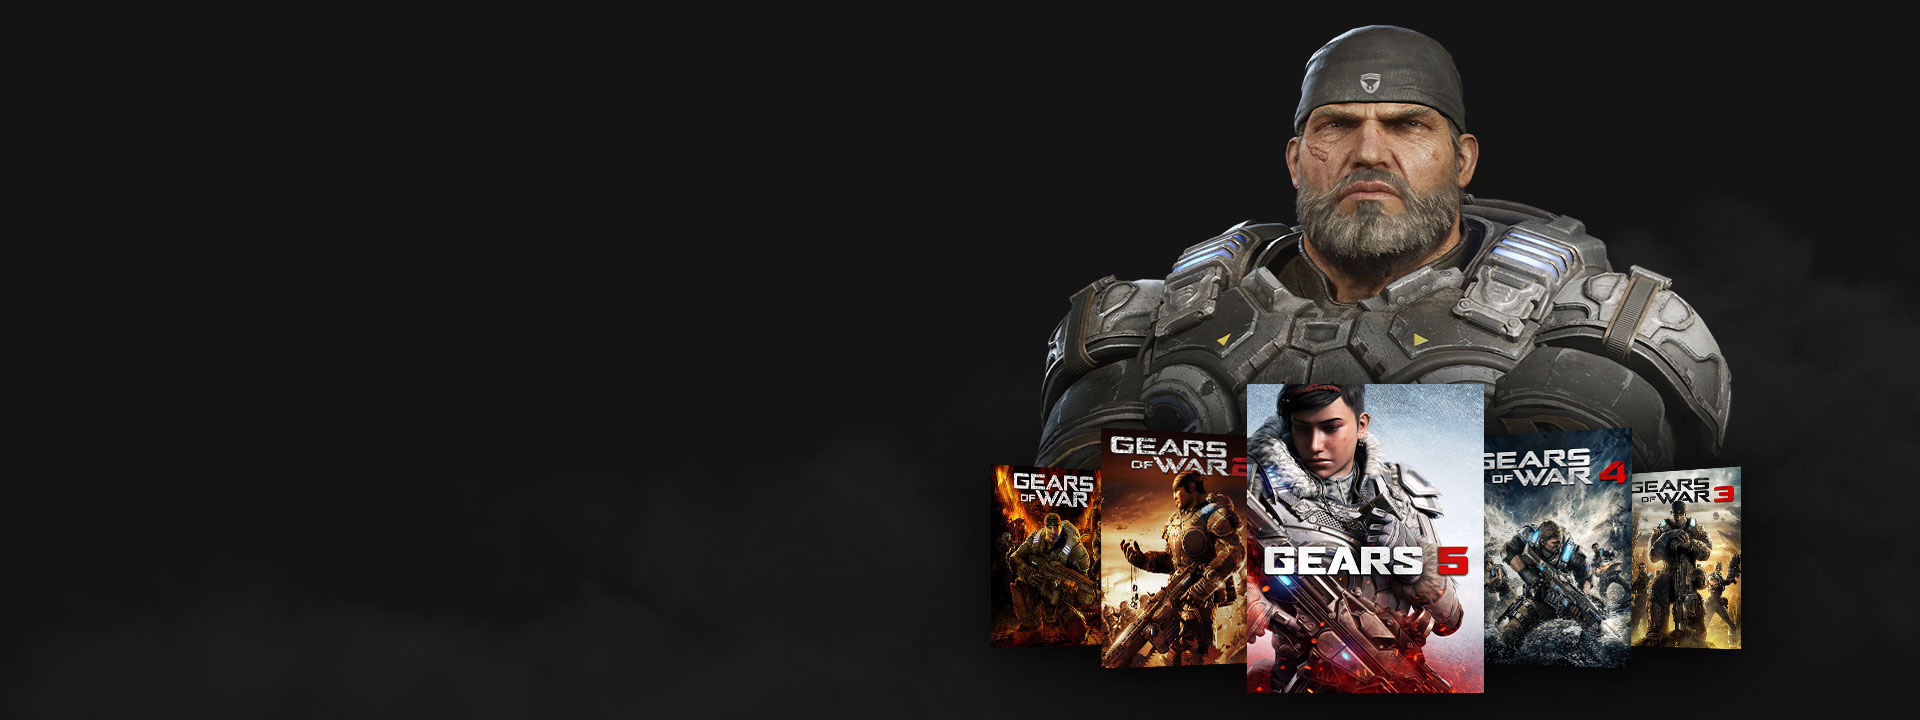 Xbox Game Pass のロゴ、Gears of War のゲーム一緒にポーズをとるマーカス。